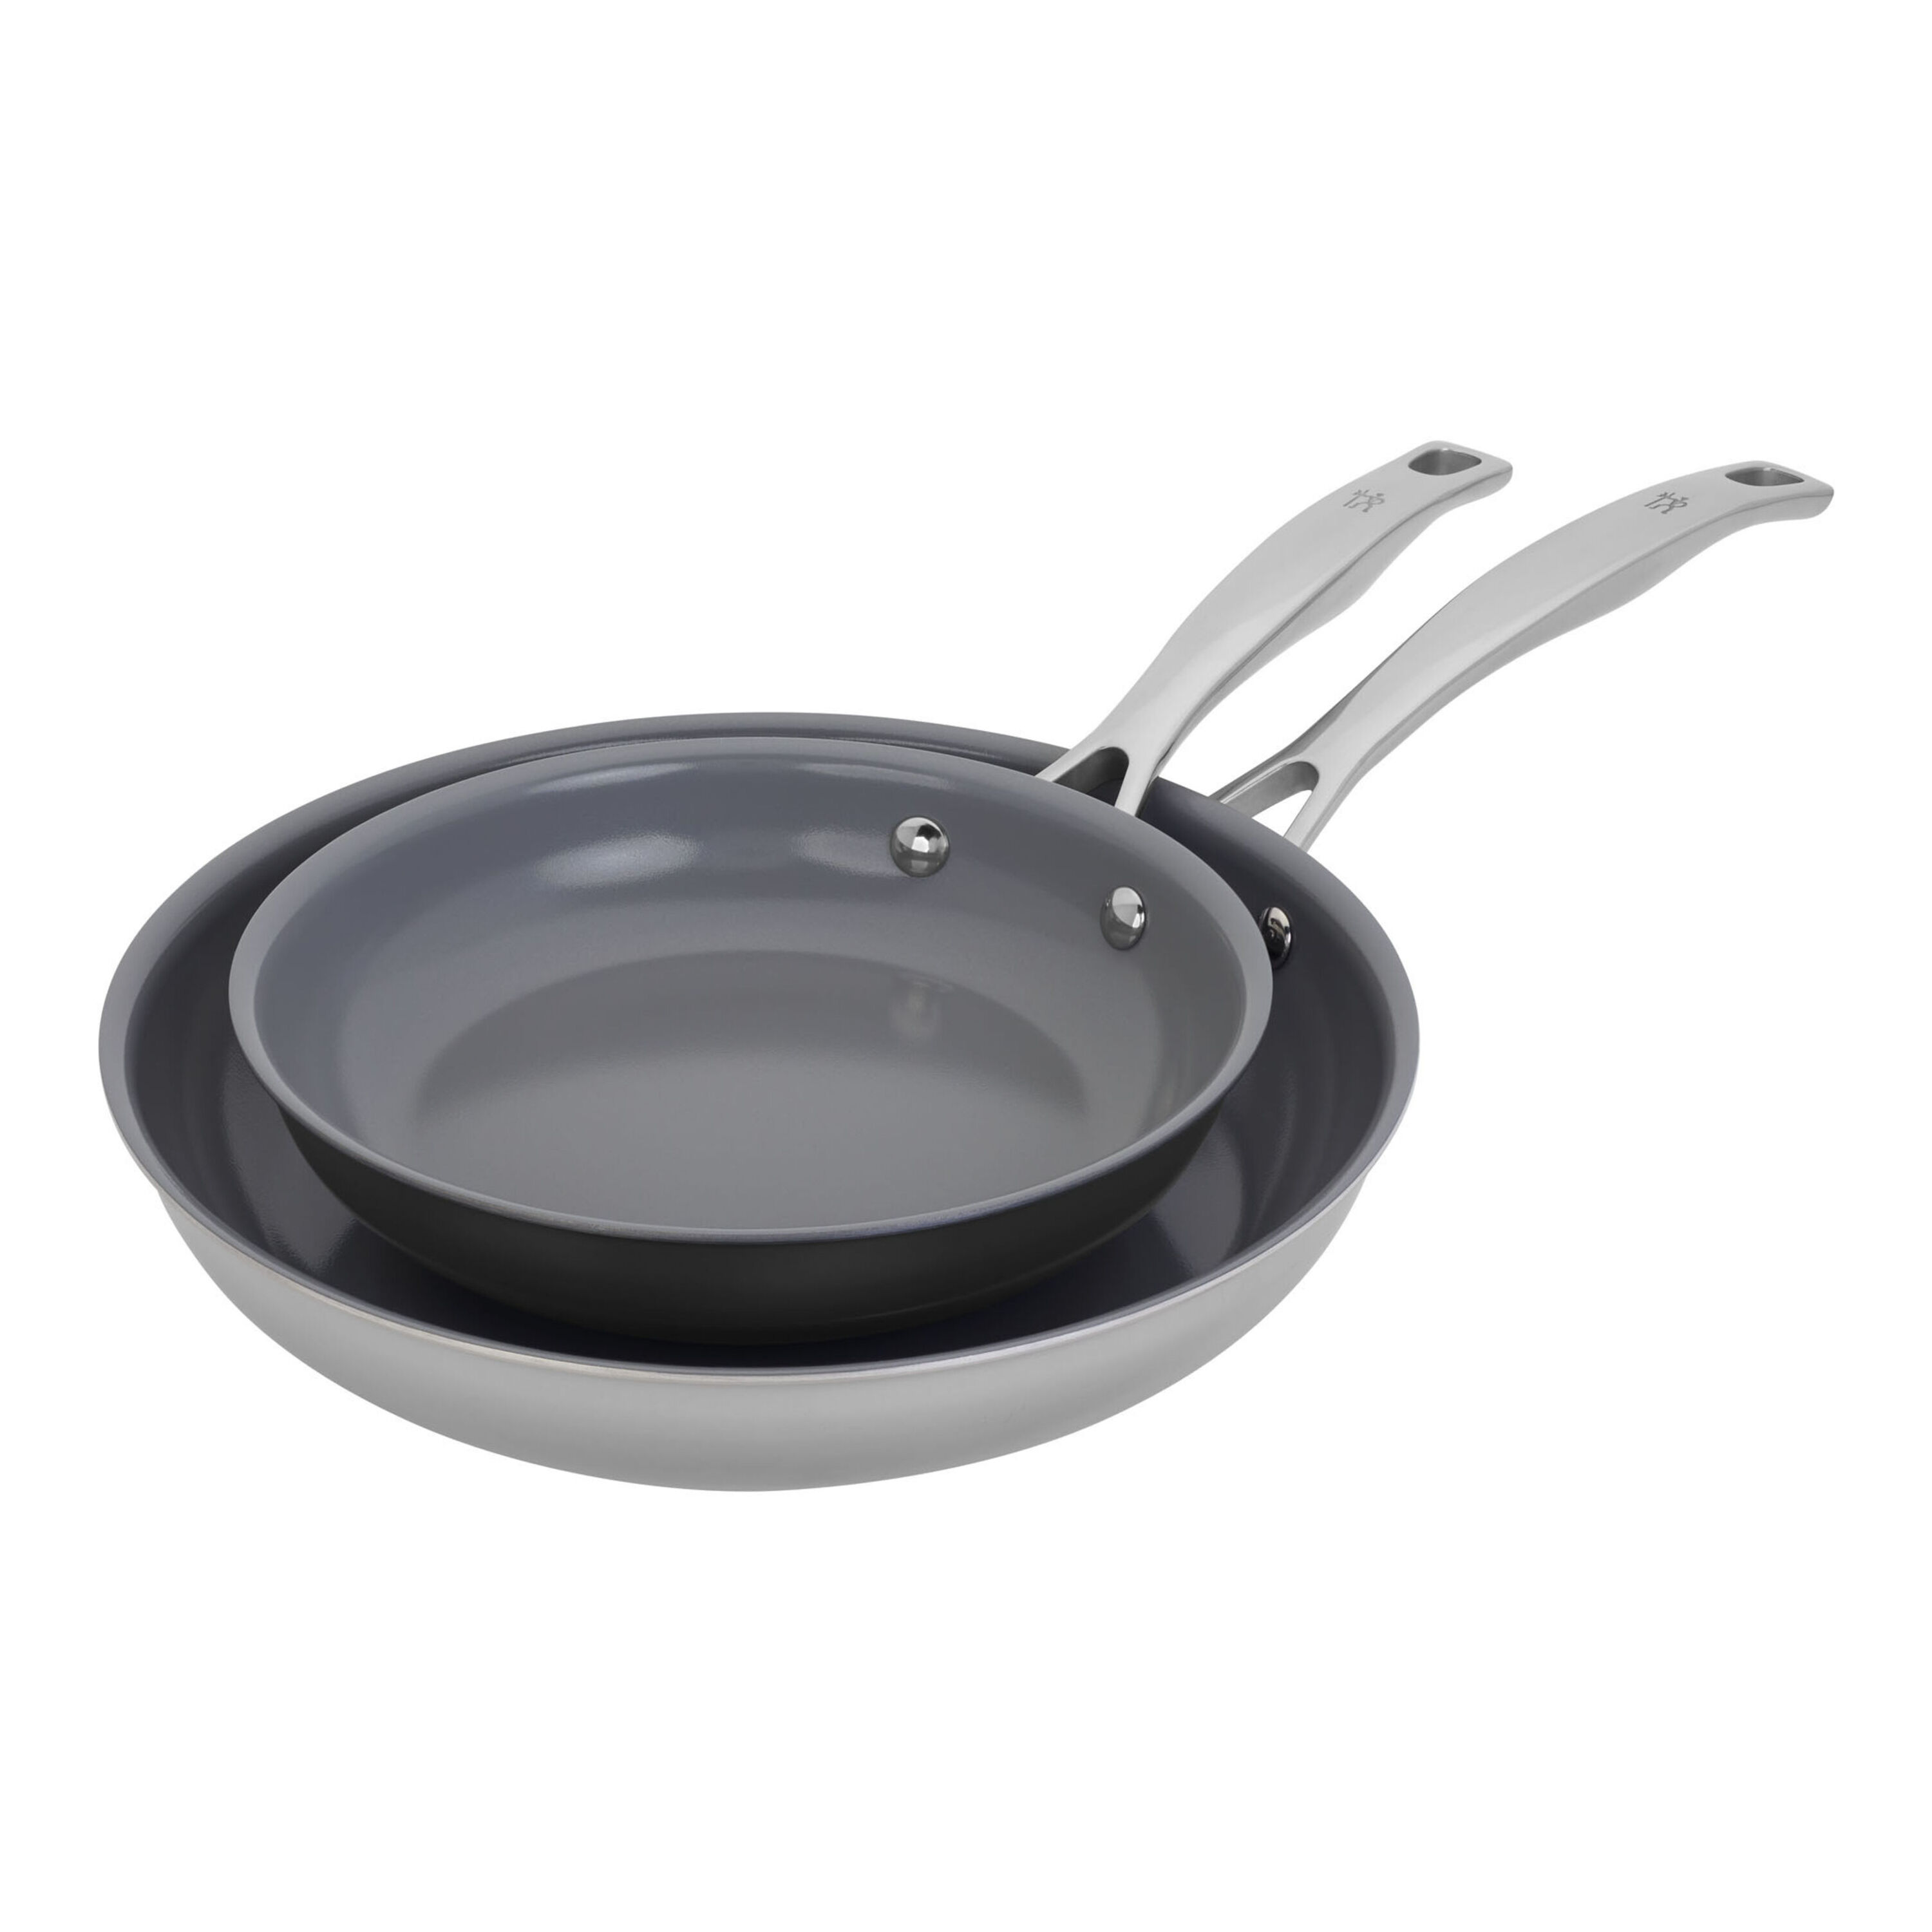 Korean Brand ☆IH 16cm ceramic pan / frying pan SET (3 unit)